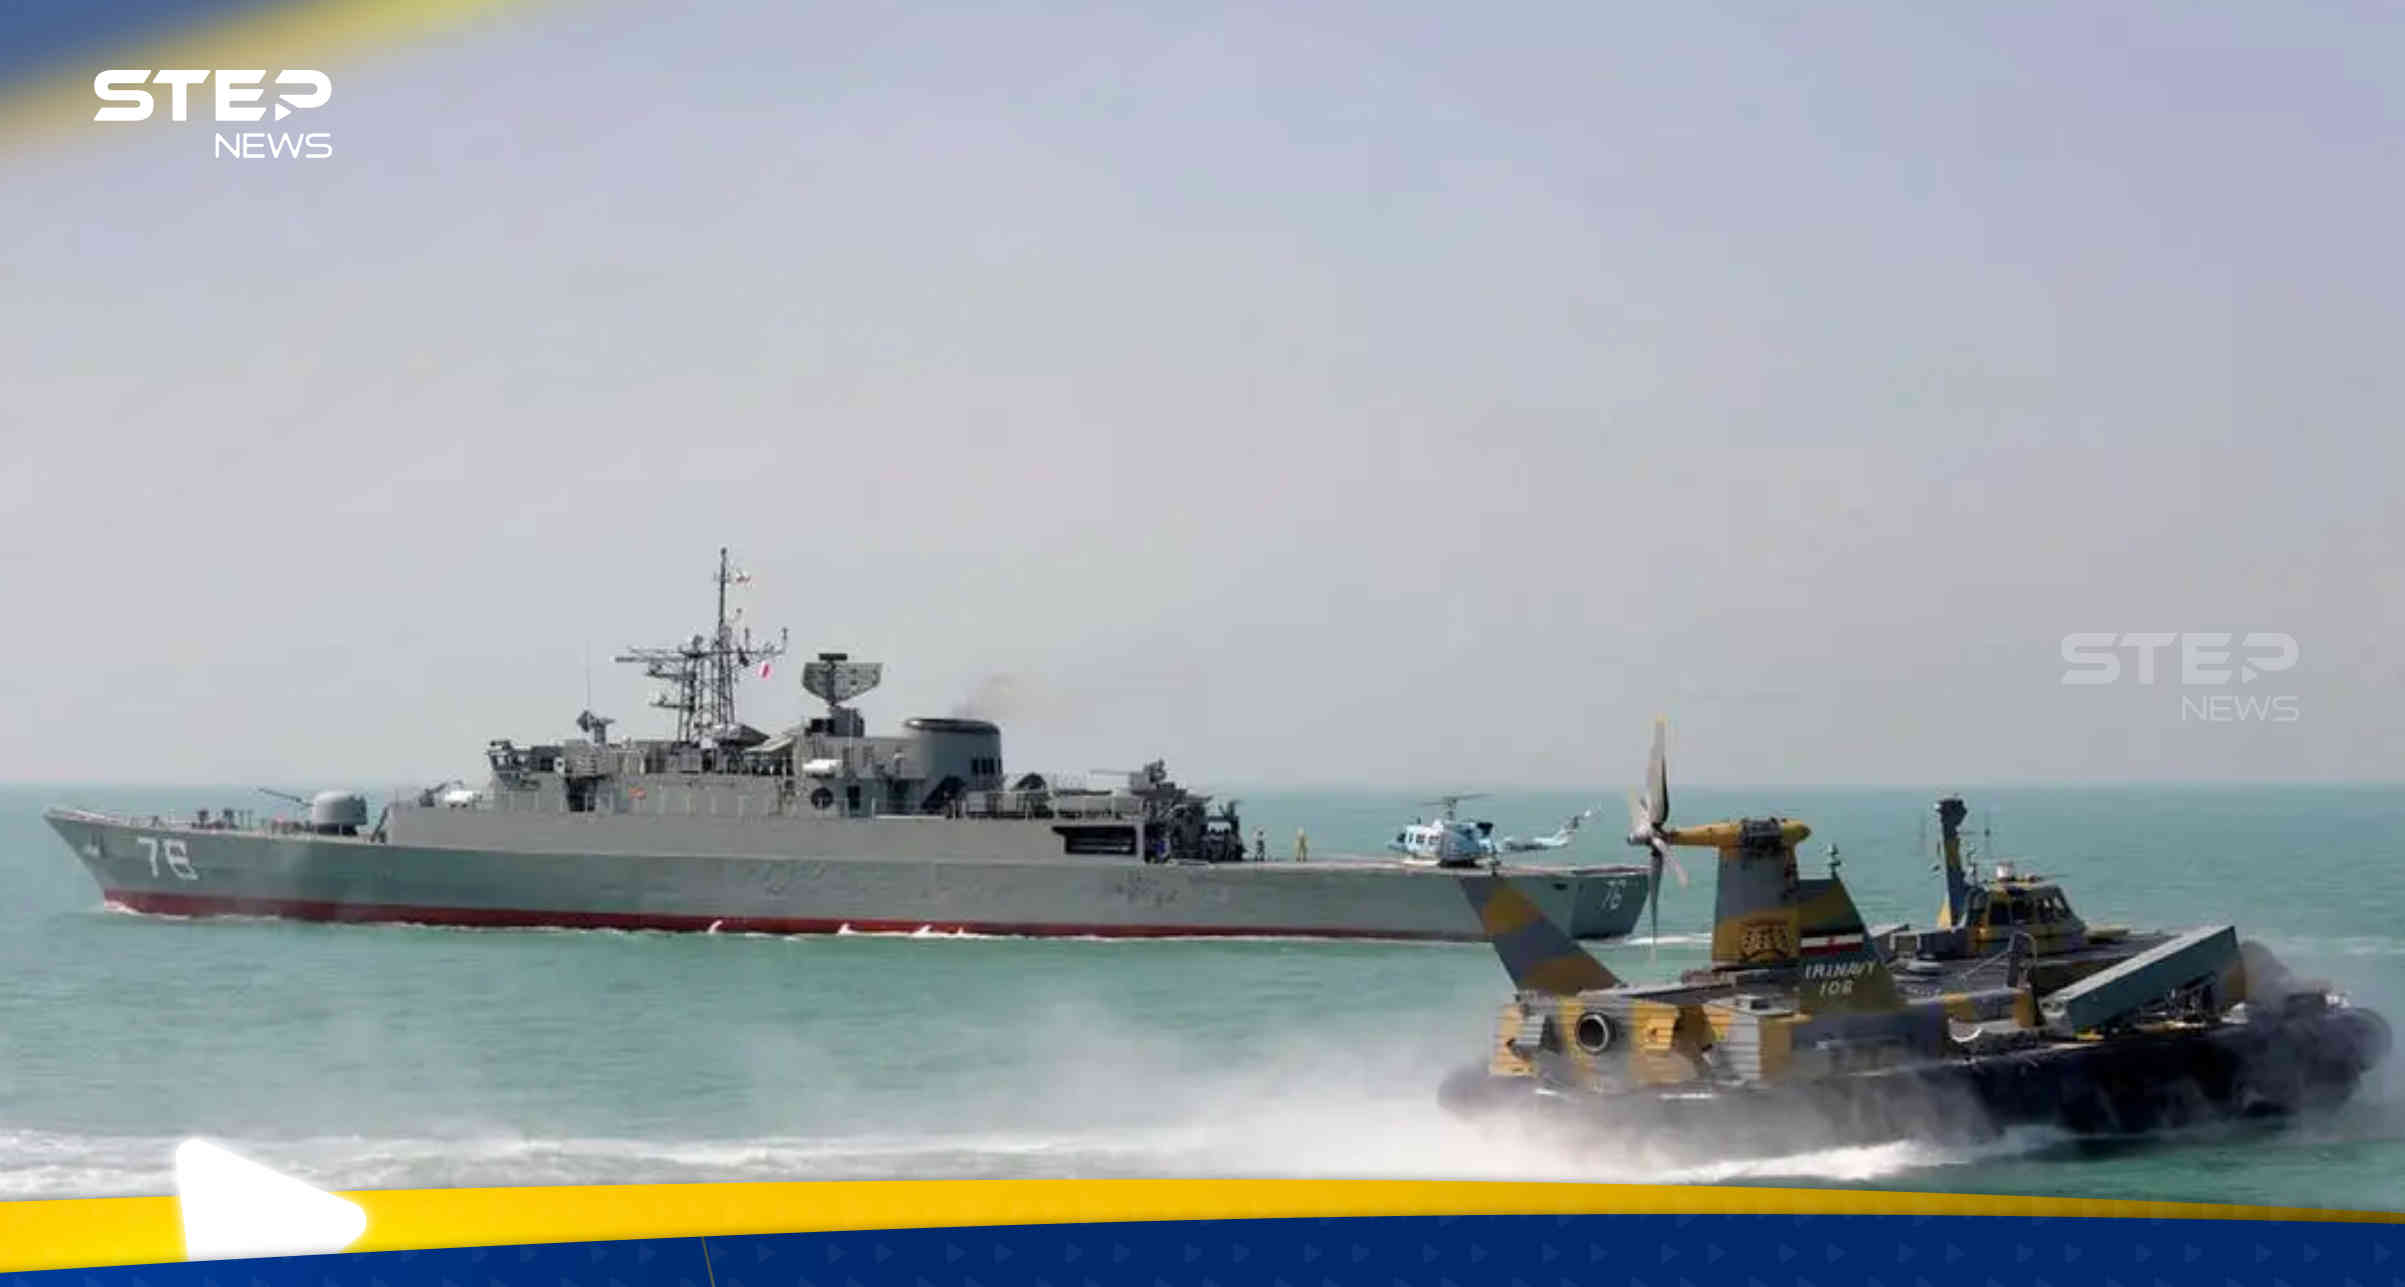 إيران تسحب السفينة "بهشاد" الاستخباراتية من البحر الأحمر خوفاً من ضربة إسرائيلية